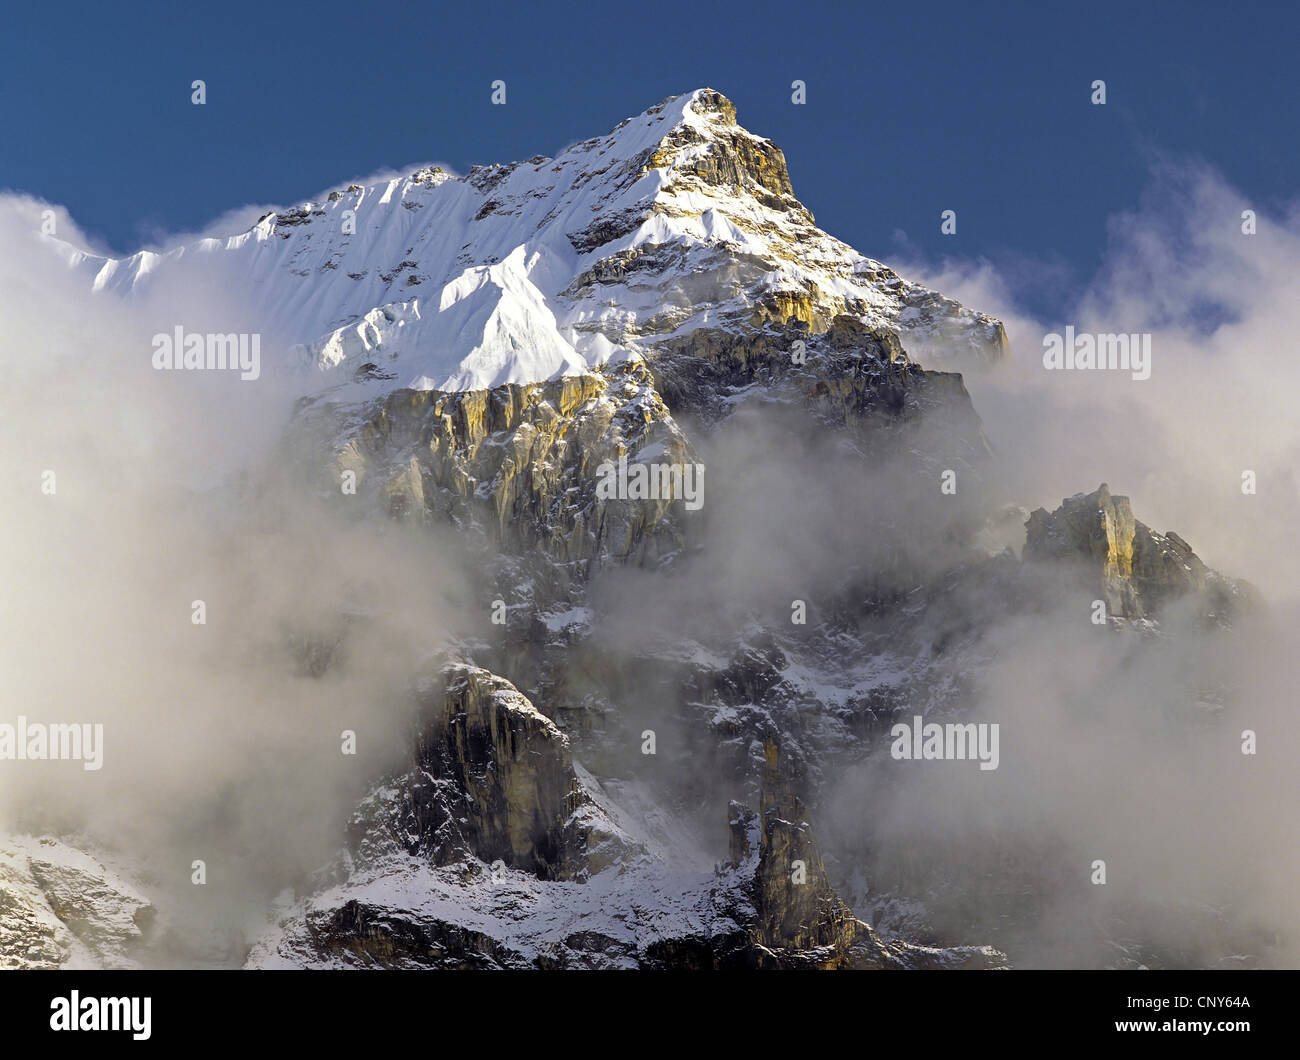 La niebla y las nubes se reúnen alrededor de los espectaculares riscos y la cumbre de un pico sin nombre en la región Kangchenjunga, Nepal, Kangchendzoenga, Jannu Foto de stock